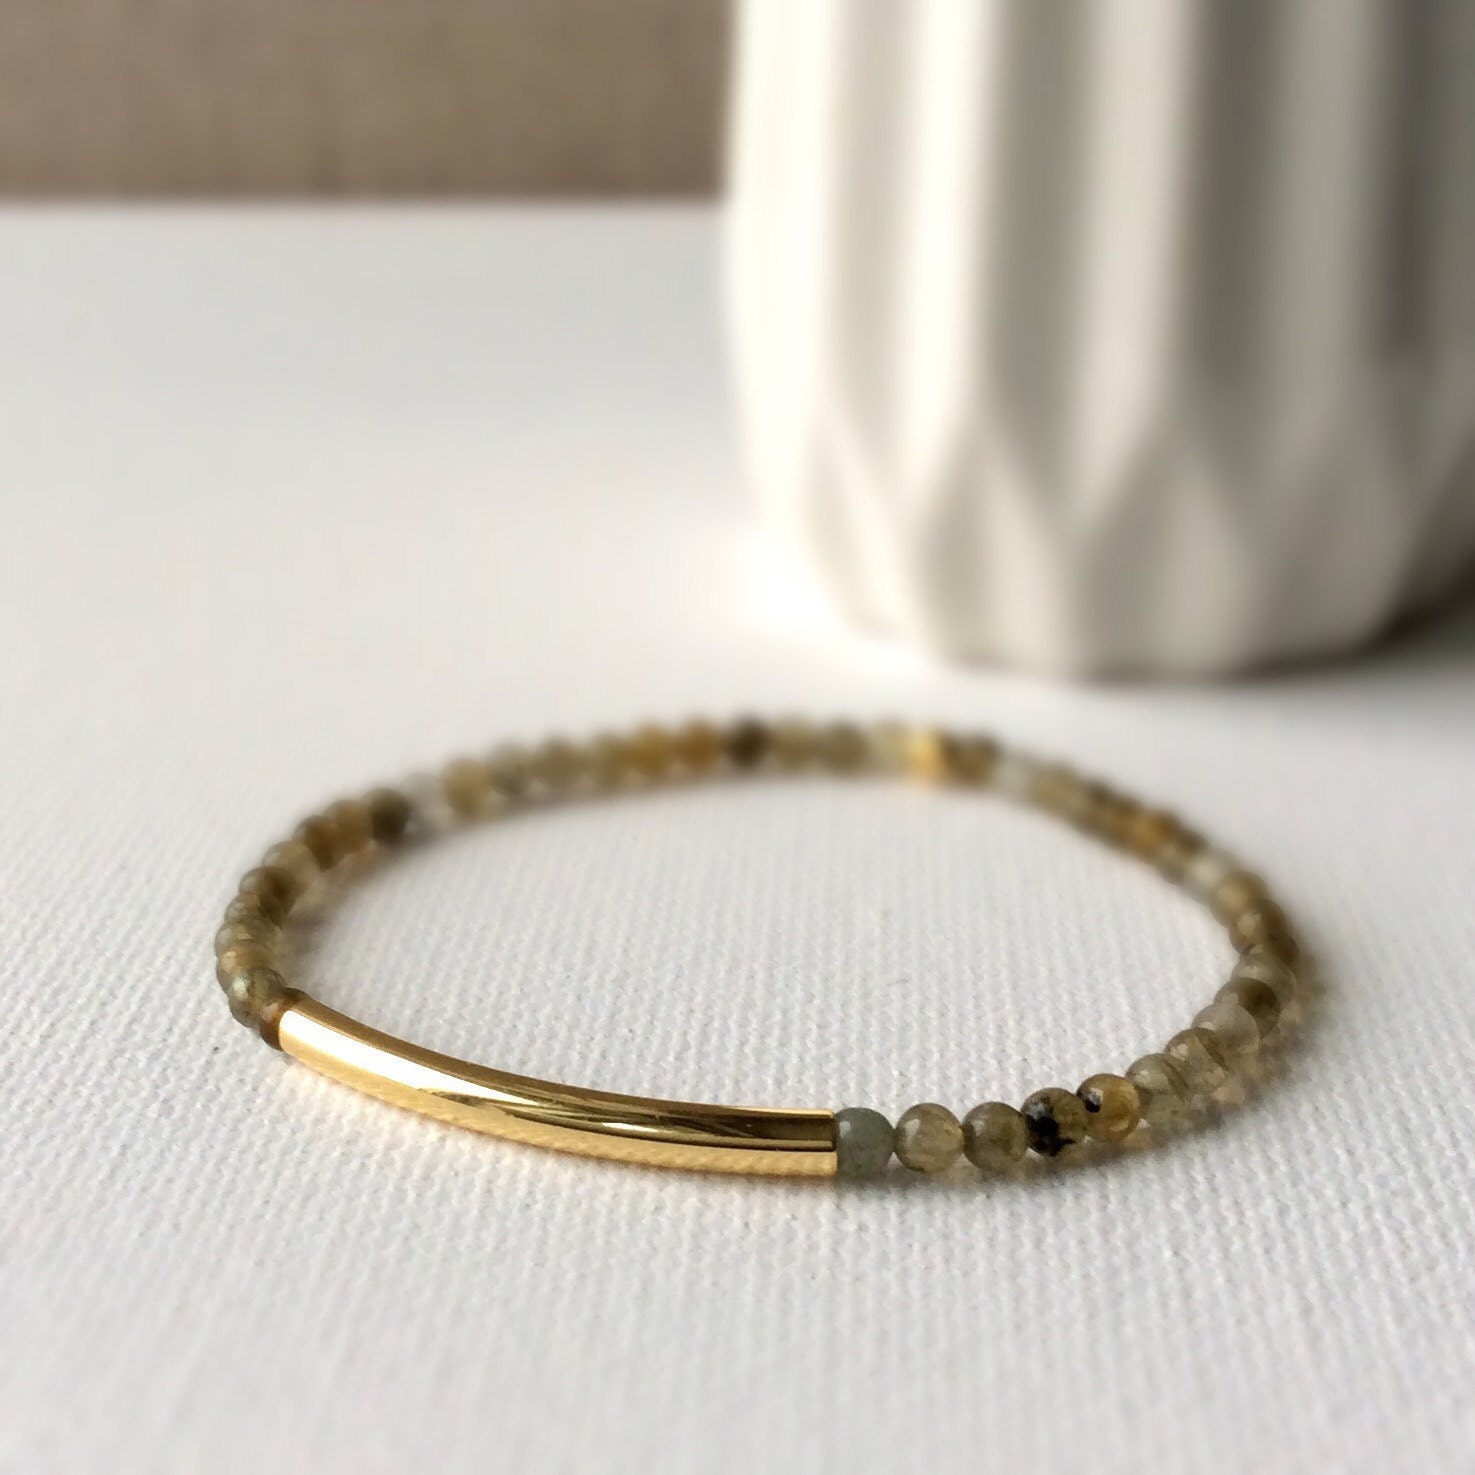 Labradorite Stretch Bracelet, tiny Bead bracelet, 16k gold bracelet, elastic bracelet, Thin beaded bracelet, gemstone jewelry, gifts for her